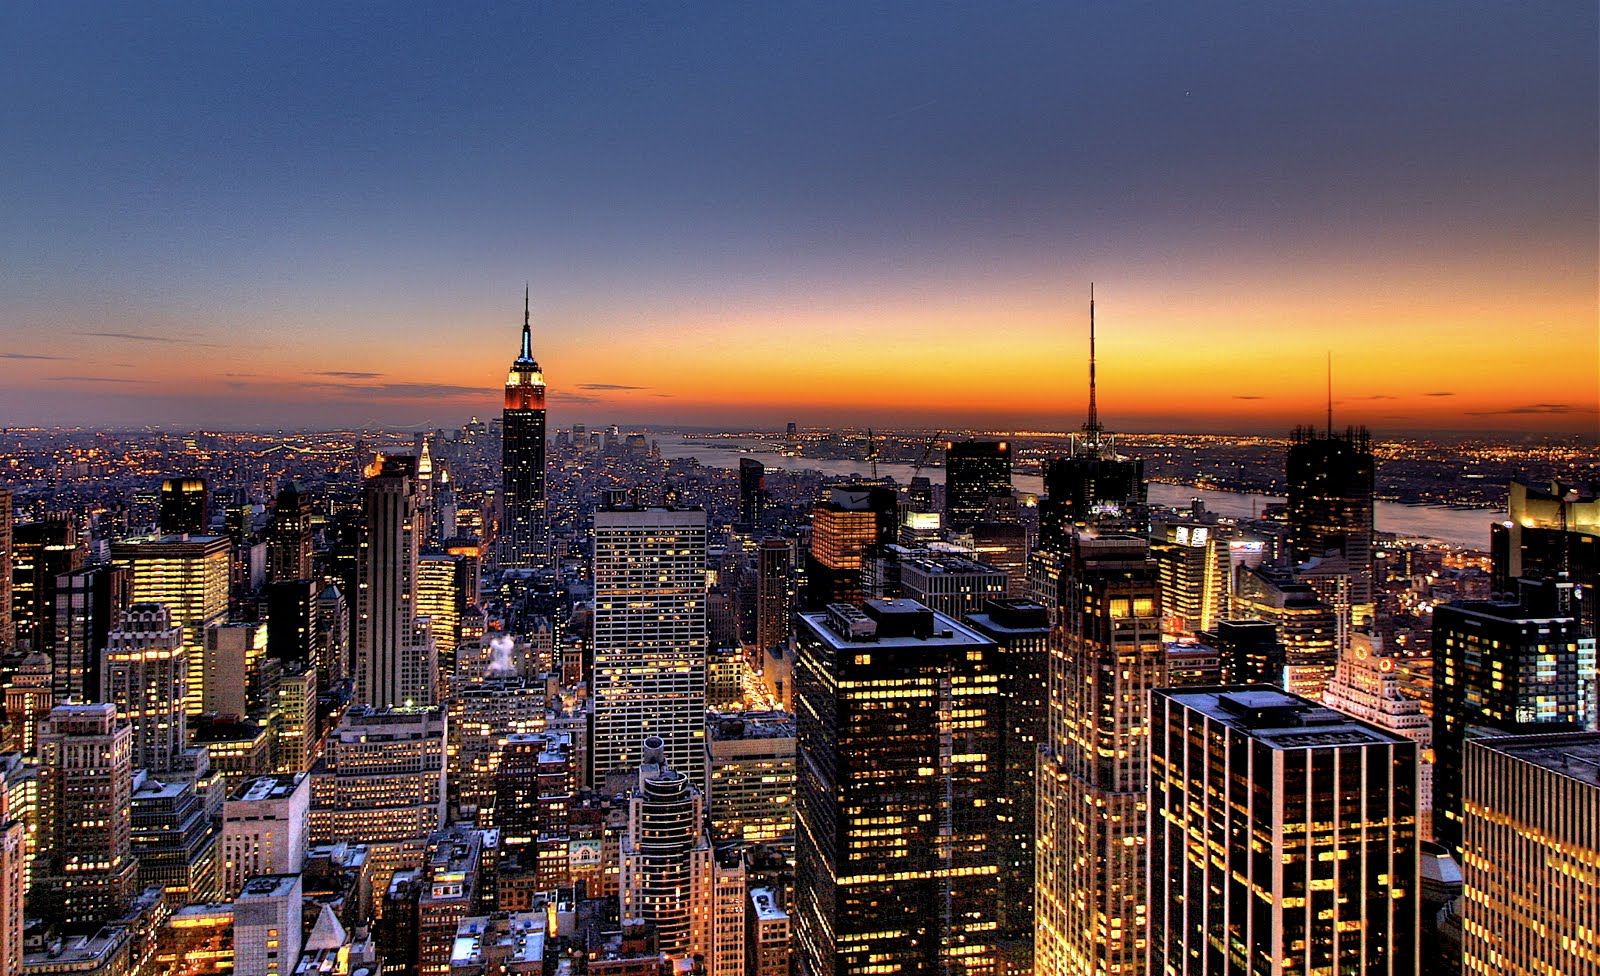 Ngắm hoàng hôn trên tòa nhà cao tầng, ngắm những tia nắng cuối ngày chiếu sáng tòa nhà chọc trời - New York City Skyline Sunset Wallpaper sẽ đem đến cho bạn cảm giác thư giãn và tràn đầy niềm đam mê với thành phố này.